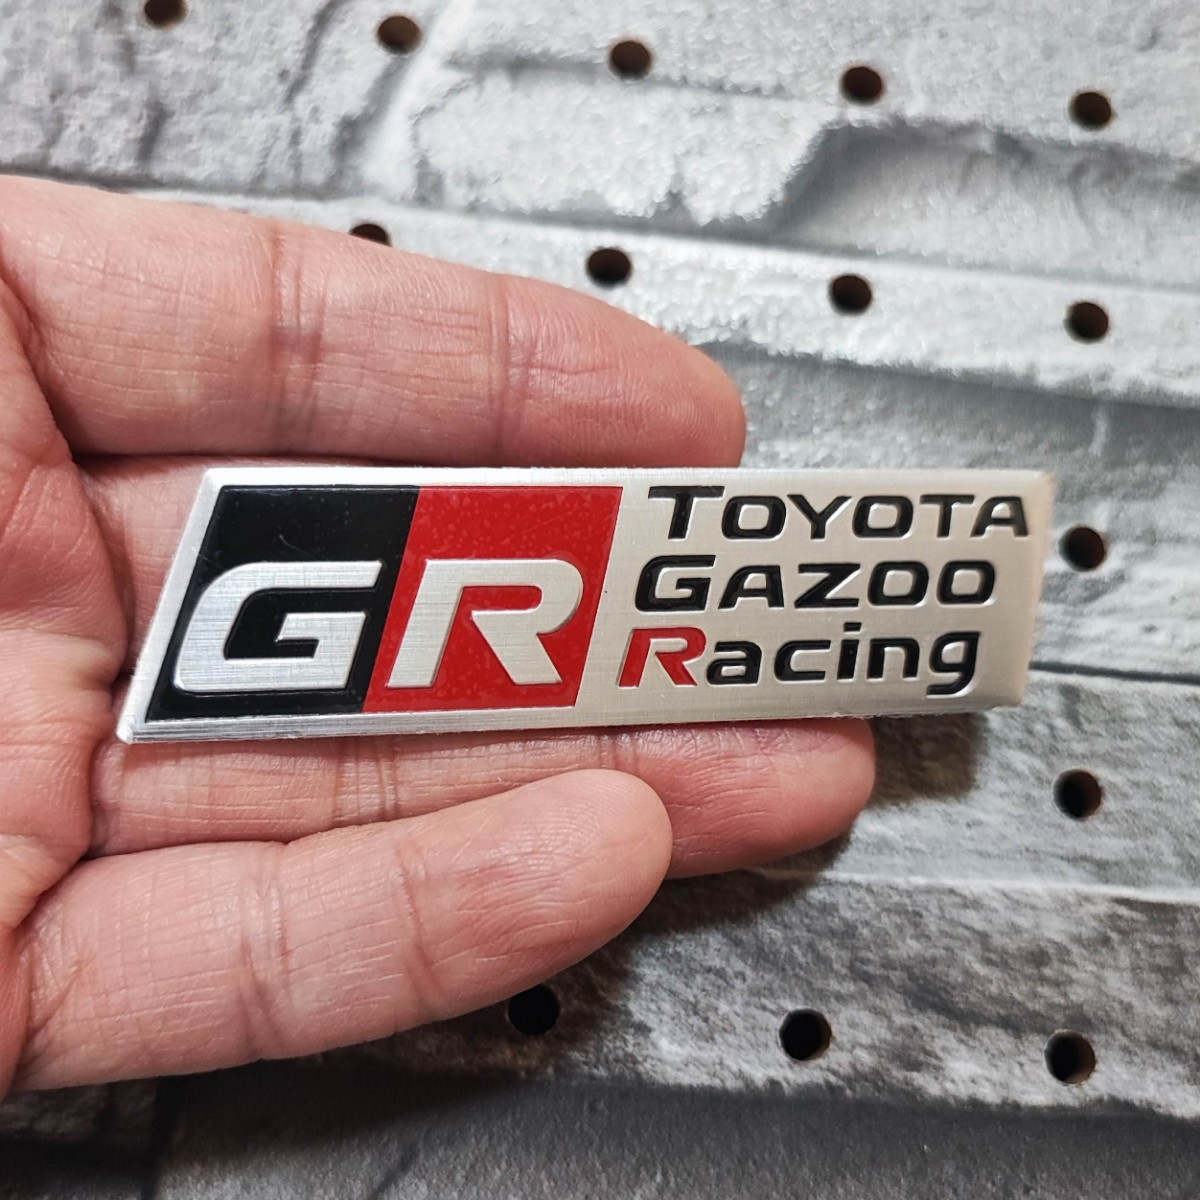 GR GAZOO Racing B 軽量アルミ製 エンブレム■プリウスPHV カローラ アクア HILUX ランドクルーザー C-HR ヤリスクロス 86 SUPRA ハリアー_画像1